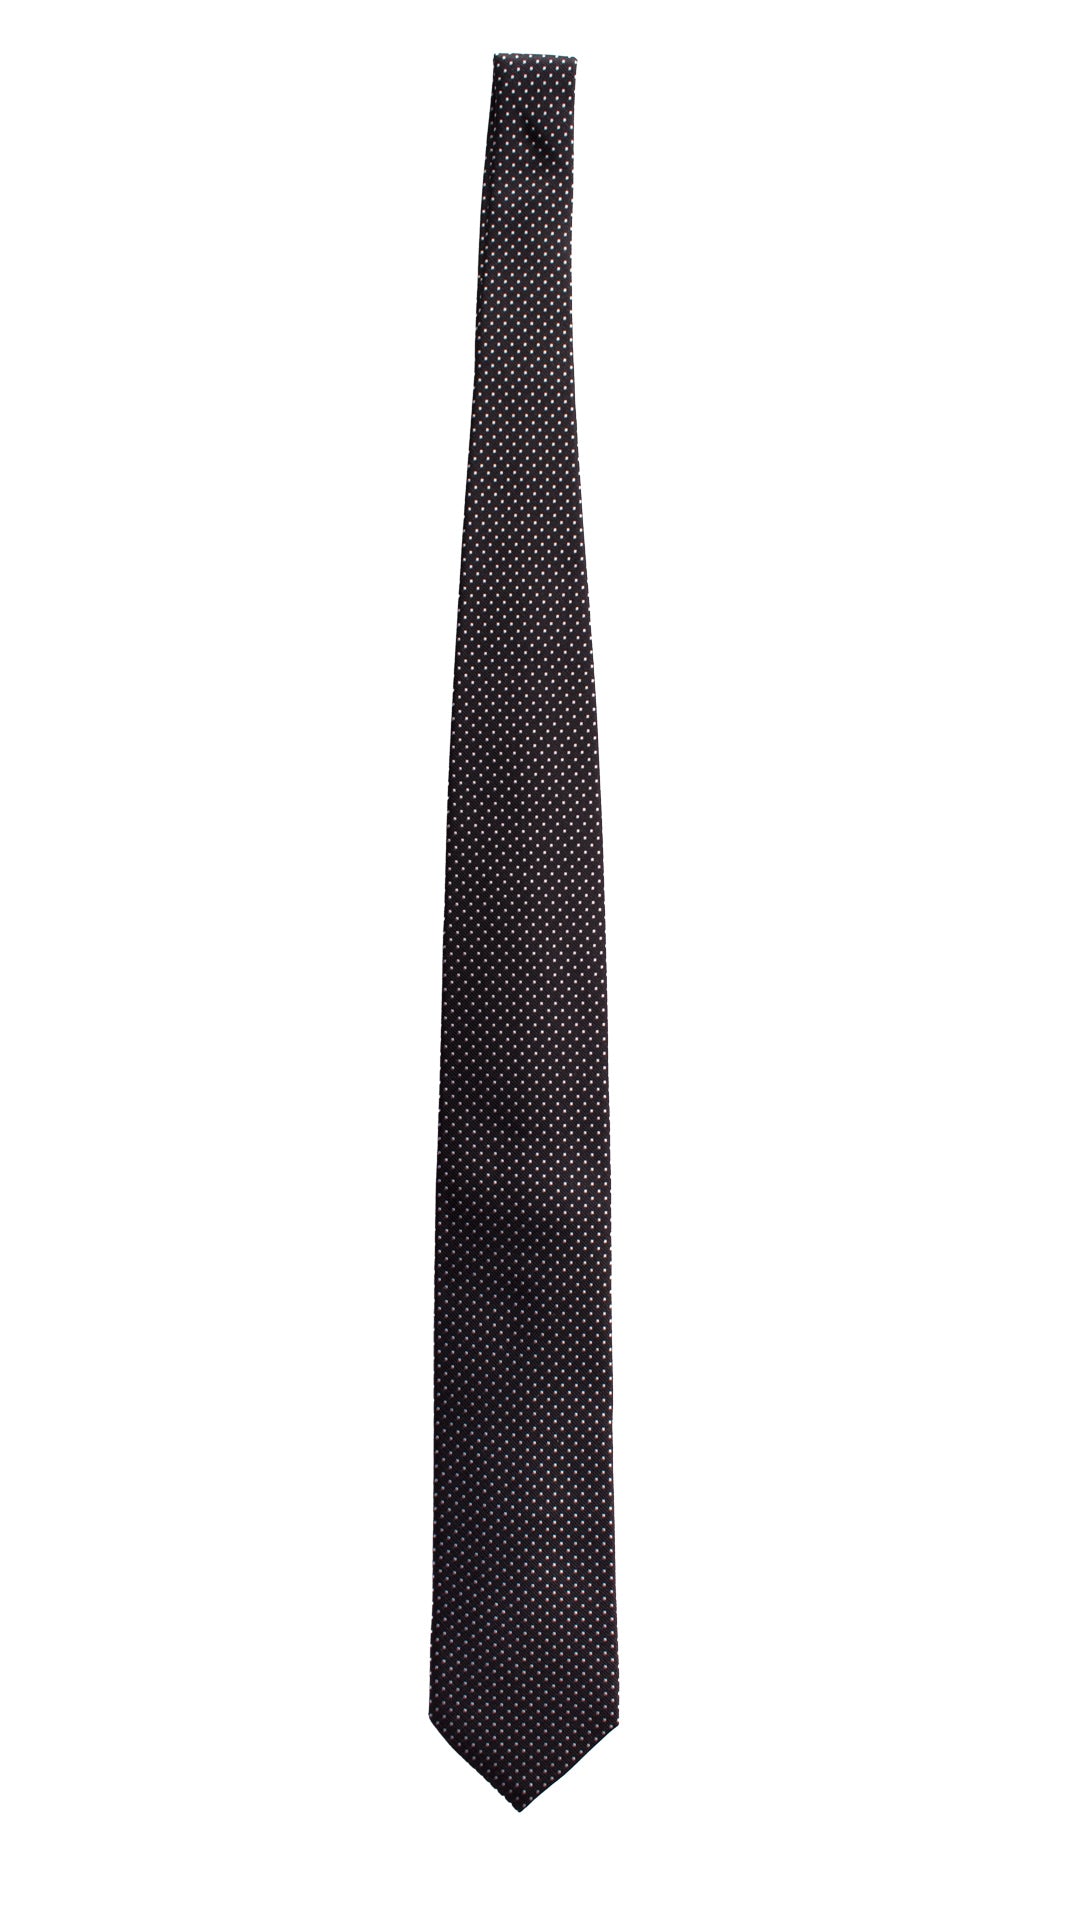 Cravatta da Cerimonia di Seta Blu Pois Bianchi CY5079 Intera